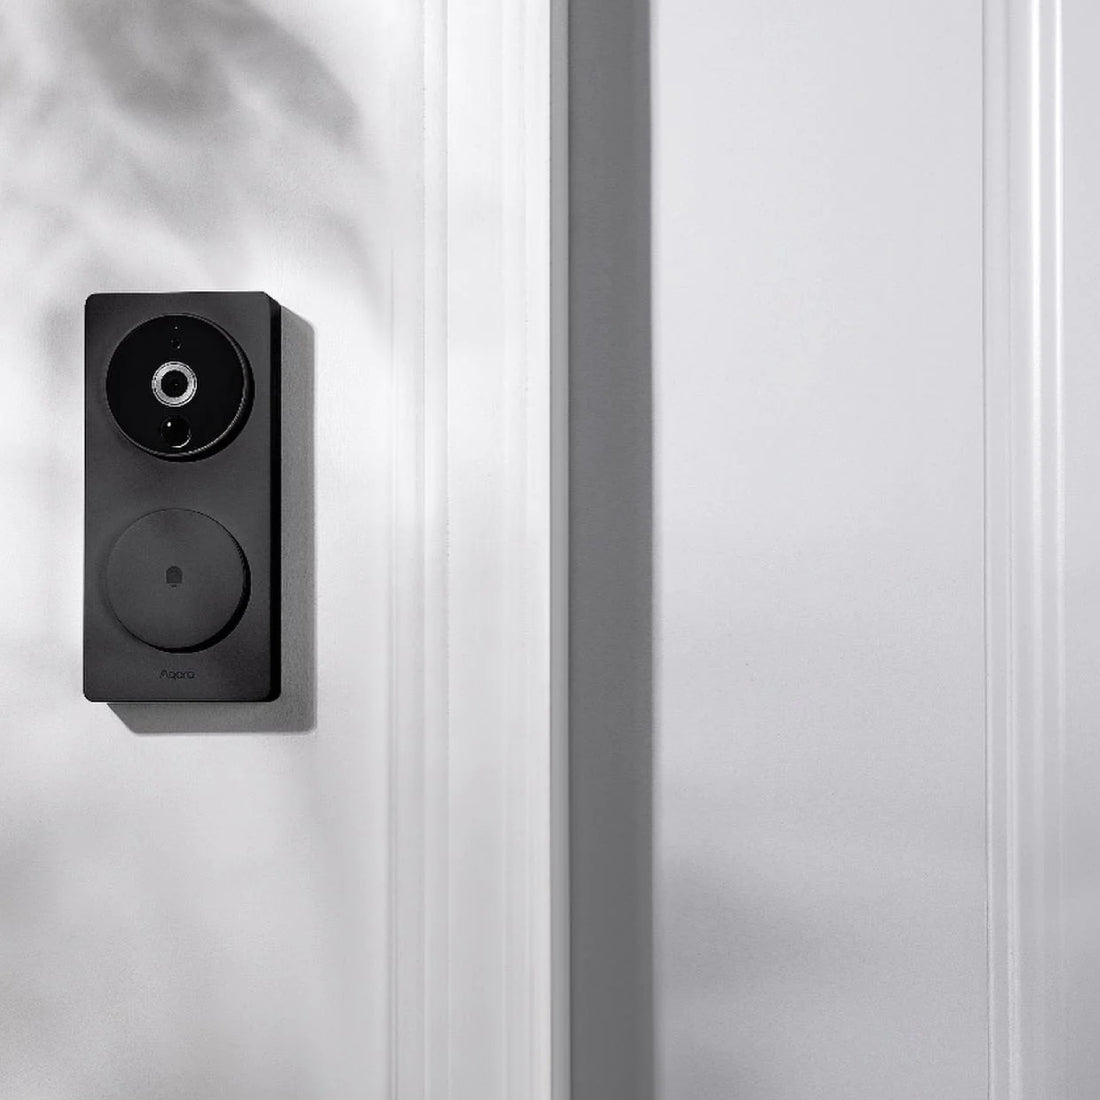 Aqara Smart Video Doorbell G4 - Black - أكسسوار ذكي - Store 974 | ستور ٩٧٤